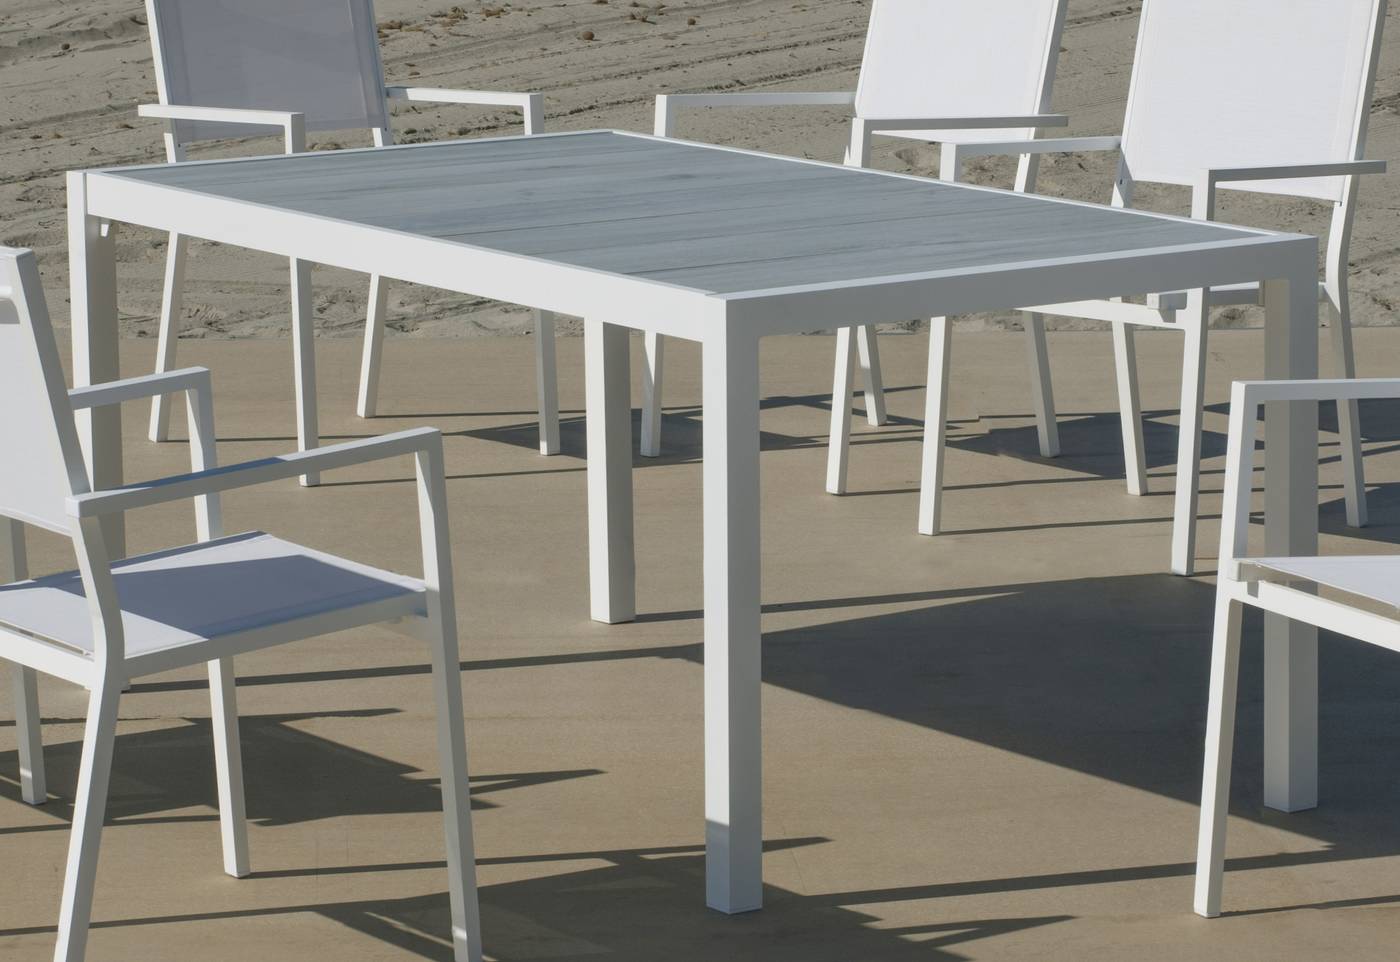 Set Palermo-160-6 Palma - Conjunto de aluminio para jardín: Mesa rectangular con tablero cerámico de 160 cm + 6 sillones. Colores: blanco y antracita.